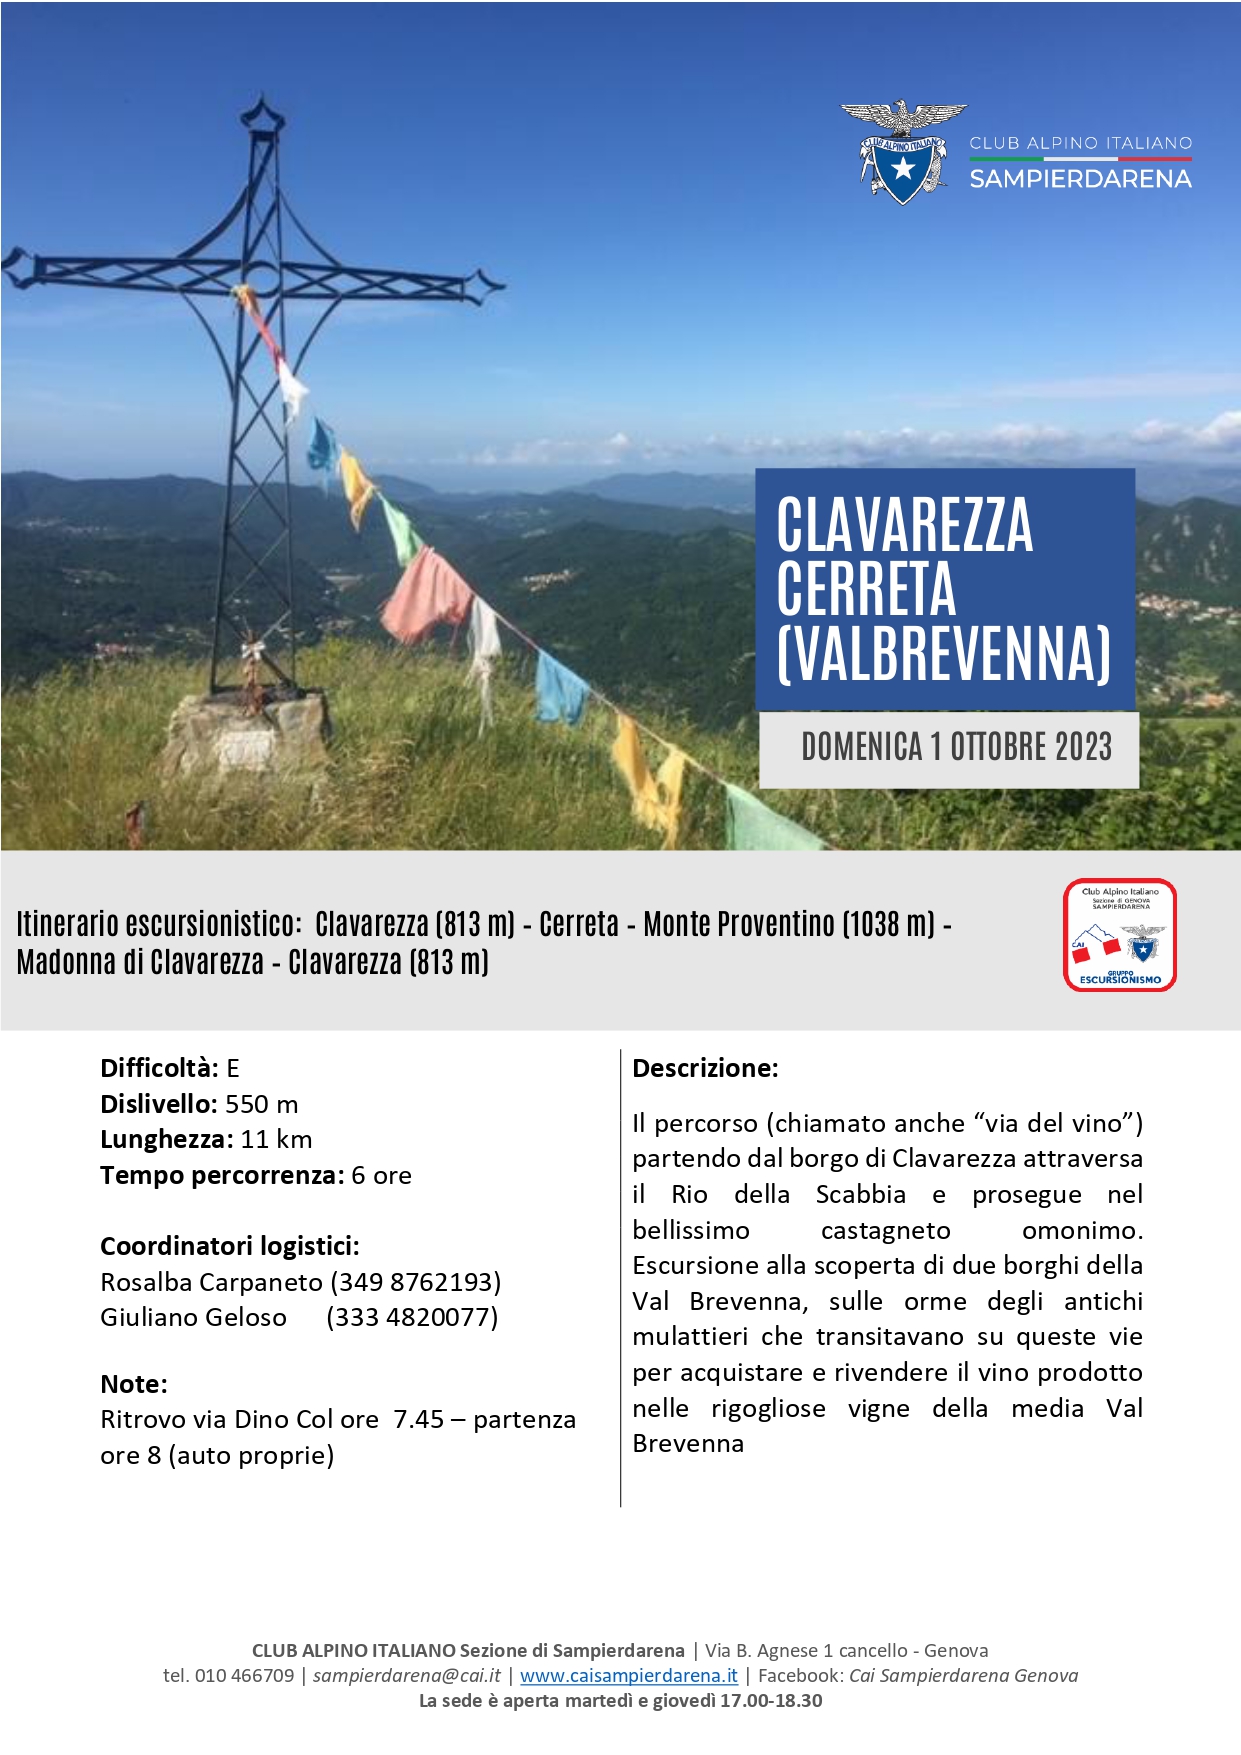 Domenica 1 Ottobre – Escursionismo – Clavarezza-Cerreta-M.Proventino